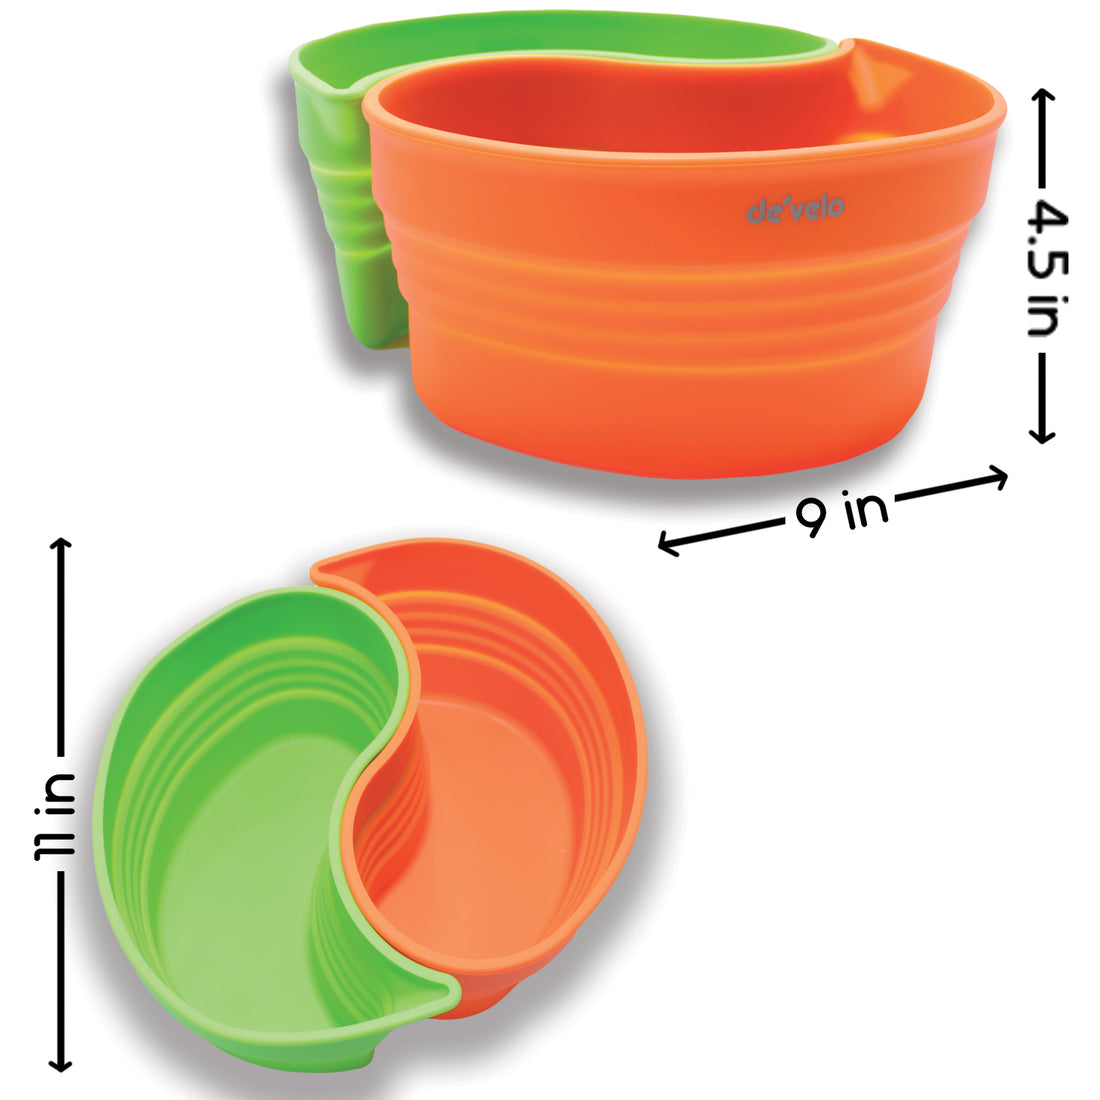 Crock-Pot Insert 2-Piece